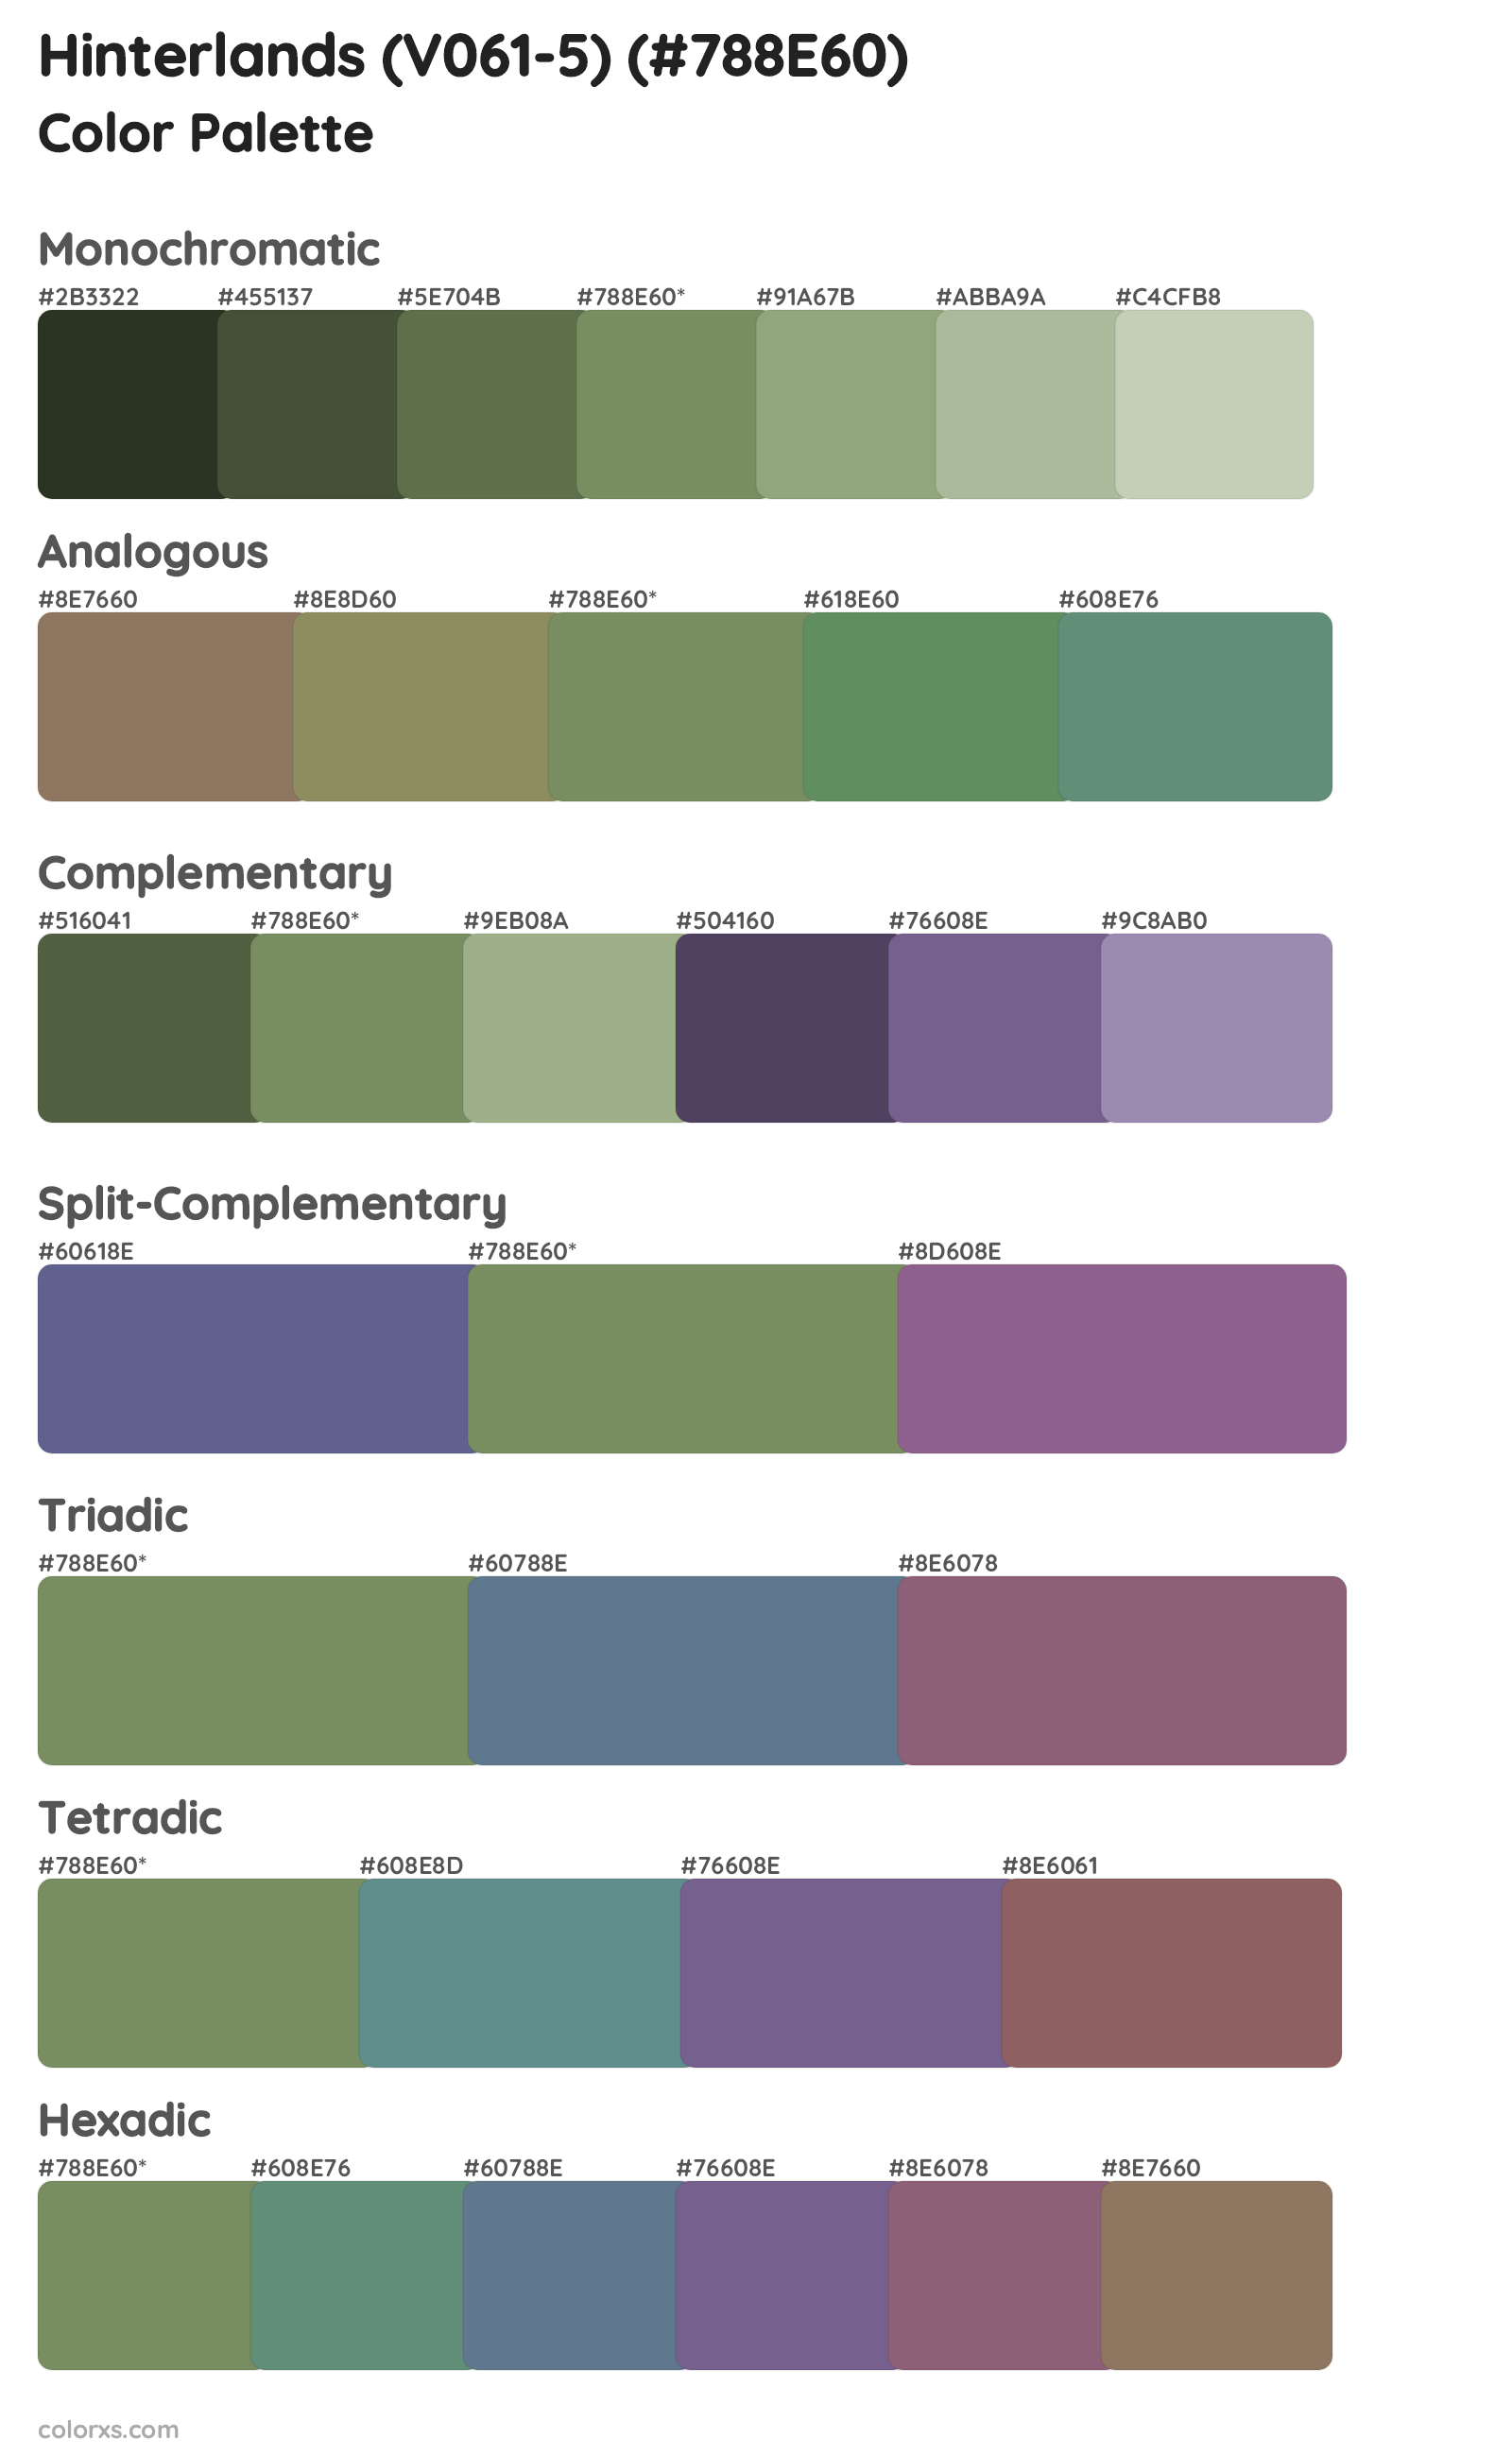 Hinterlands (V061-5) Color Scheme Palettes